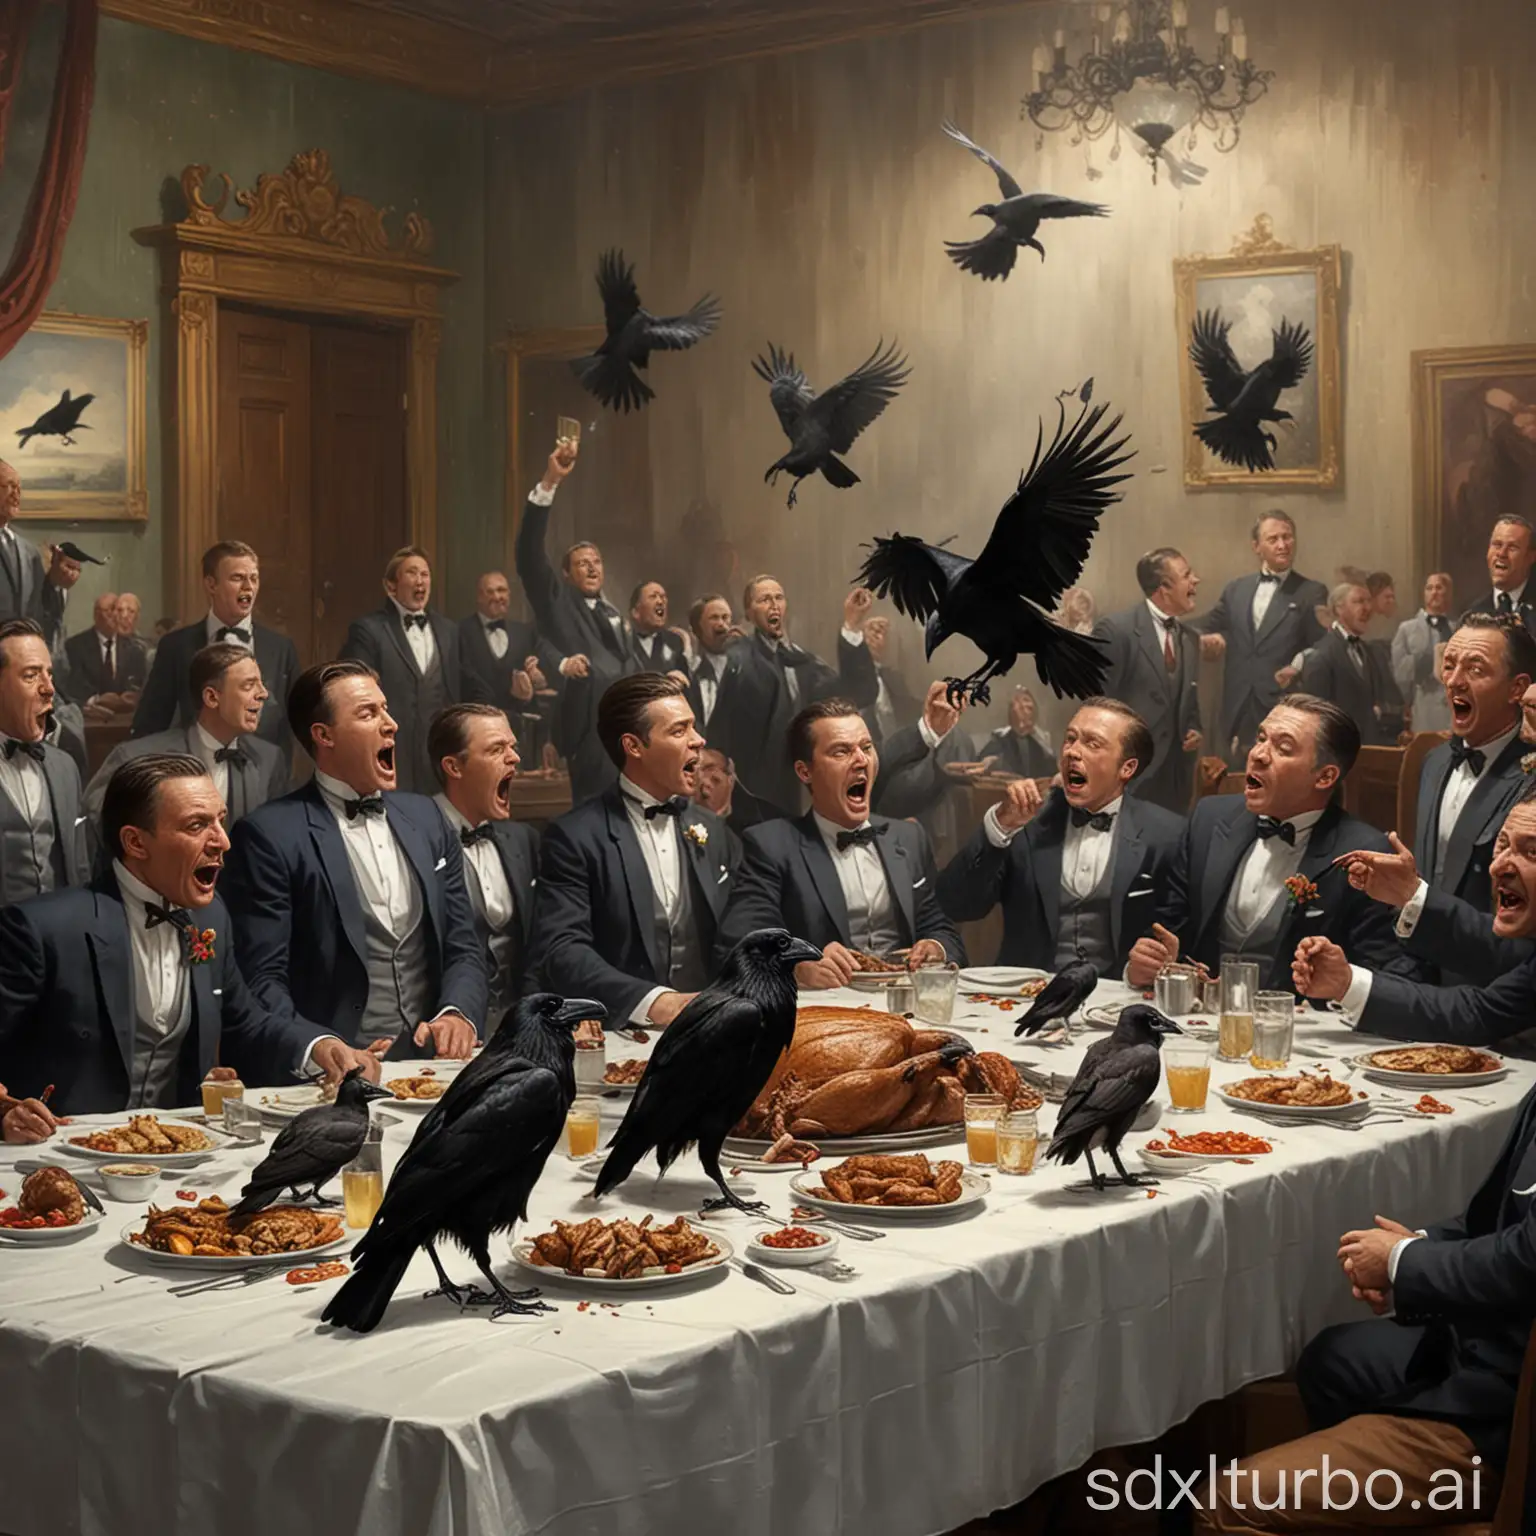 Eine Krähe sitzt auf einem gedeckten Tisch und pickt in einen großen Braten. Am Tisch sitzen Männer im Anzug, die sich anschreien. Über der Szene fliegen Geier.

